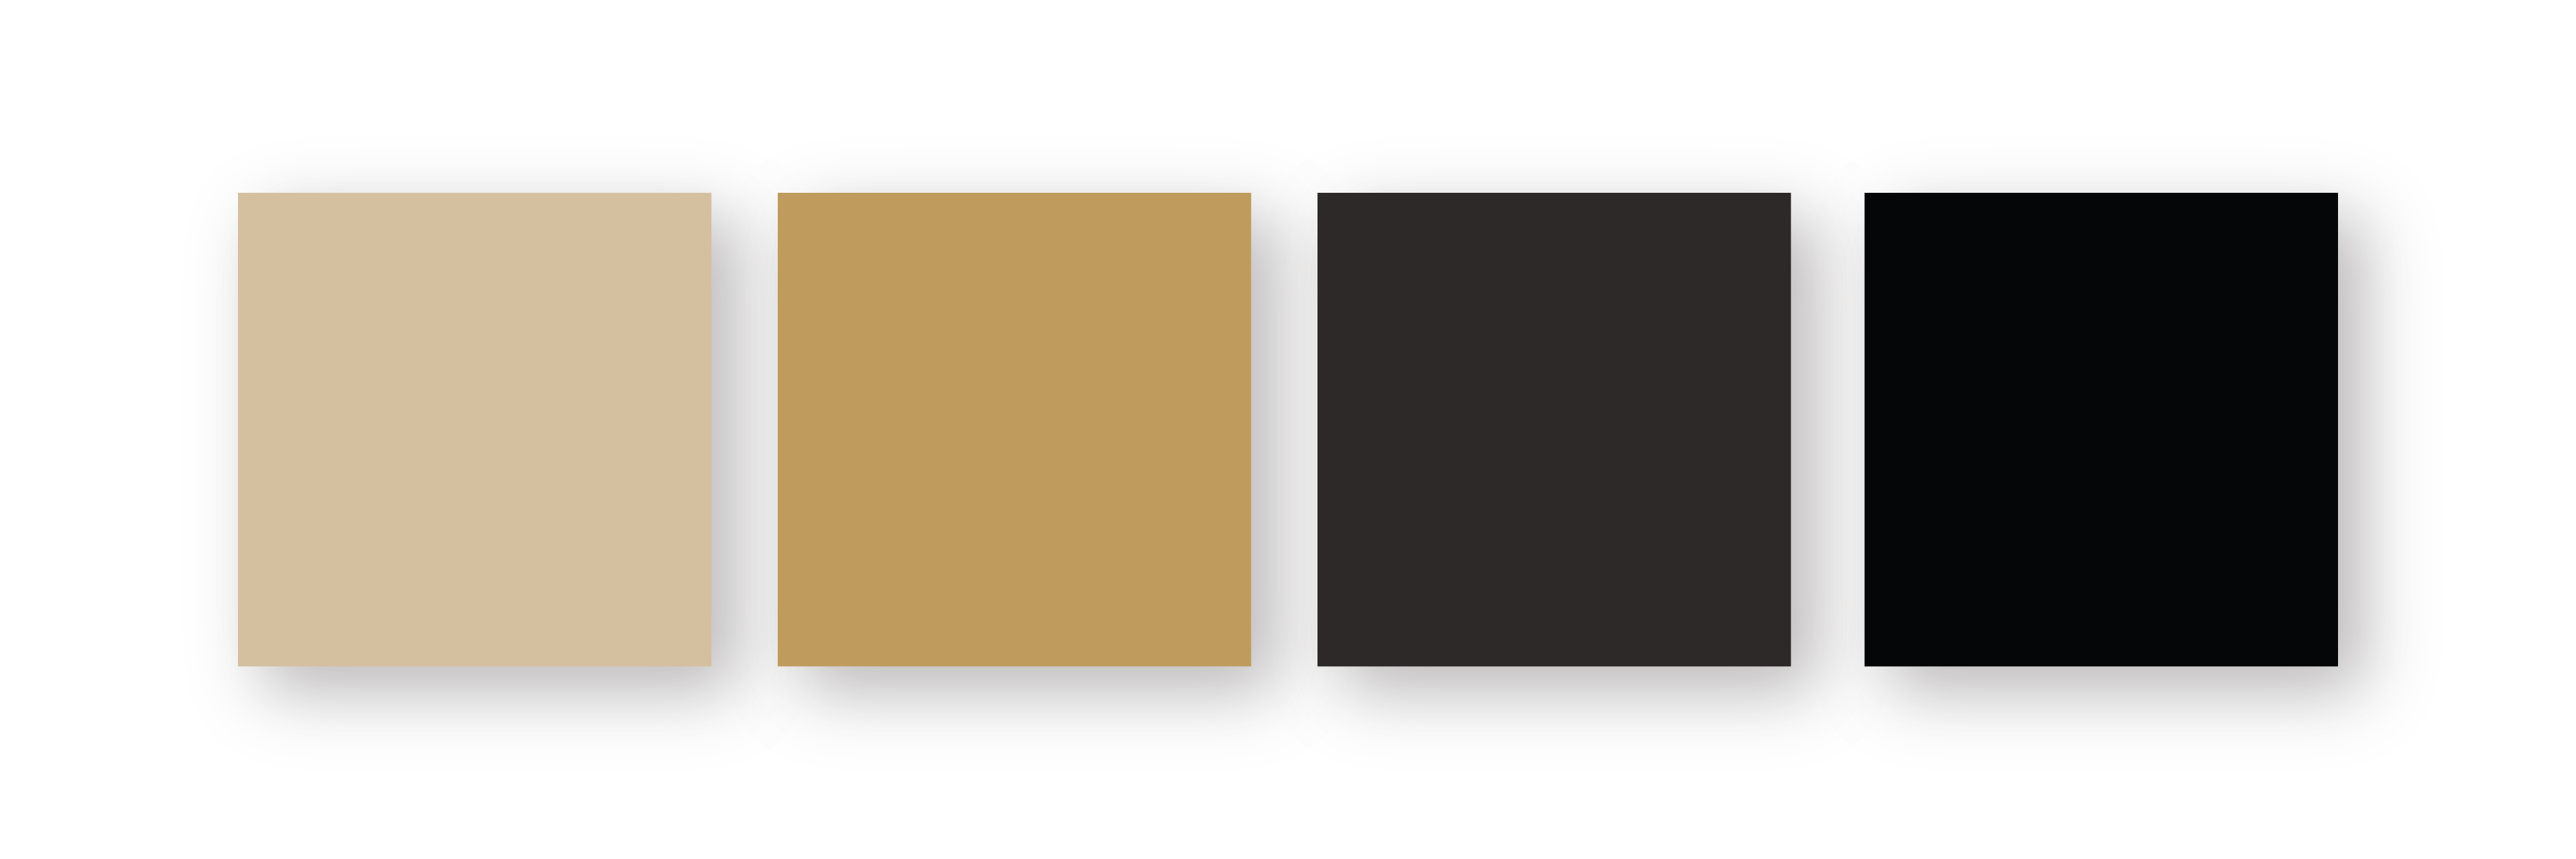 Farger som er brukt i den visuelle identiteten til Hytteveggbilder, bruk av gull, mørk grå og svart.